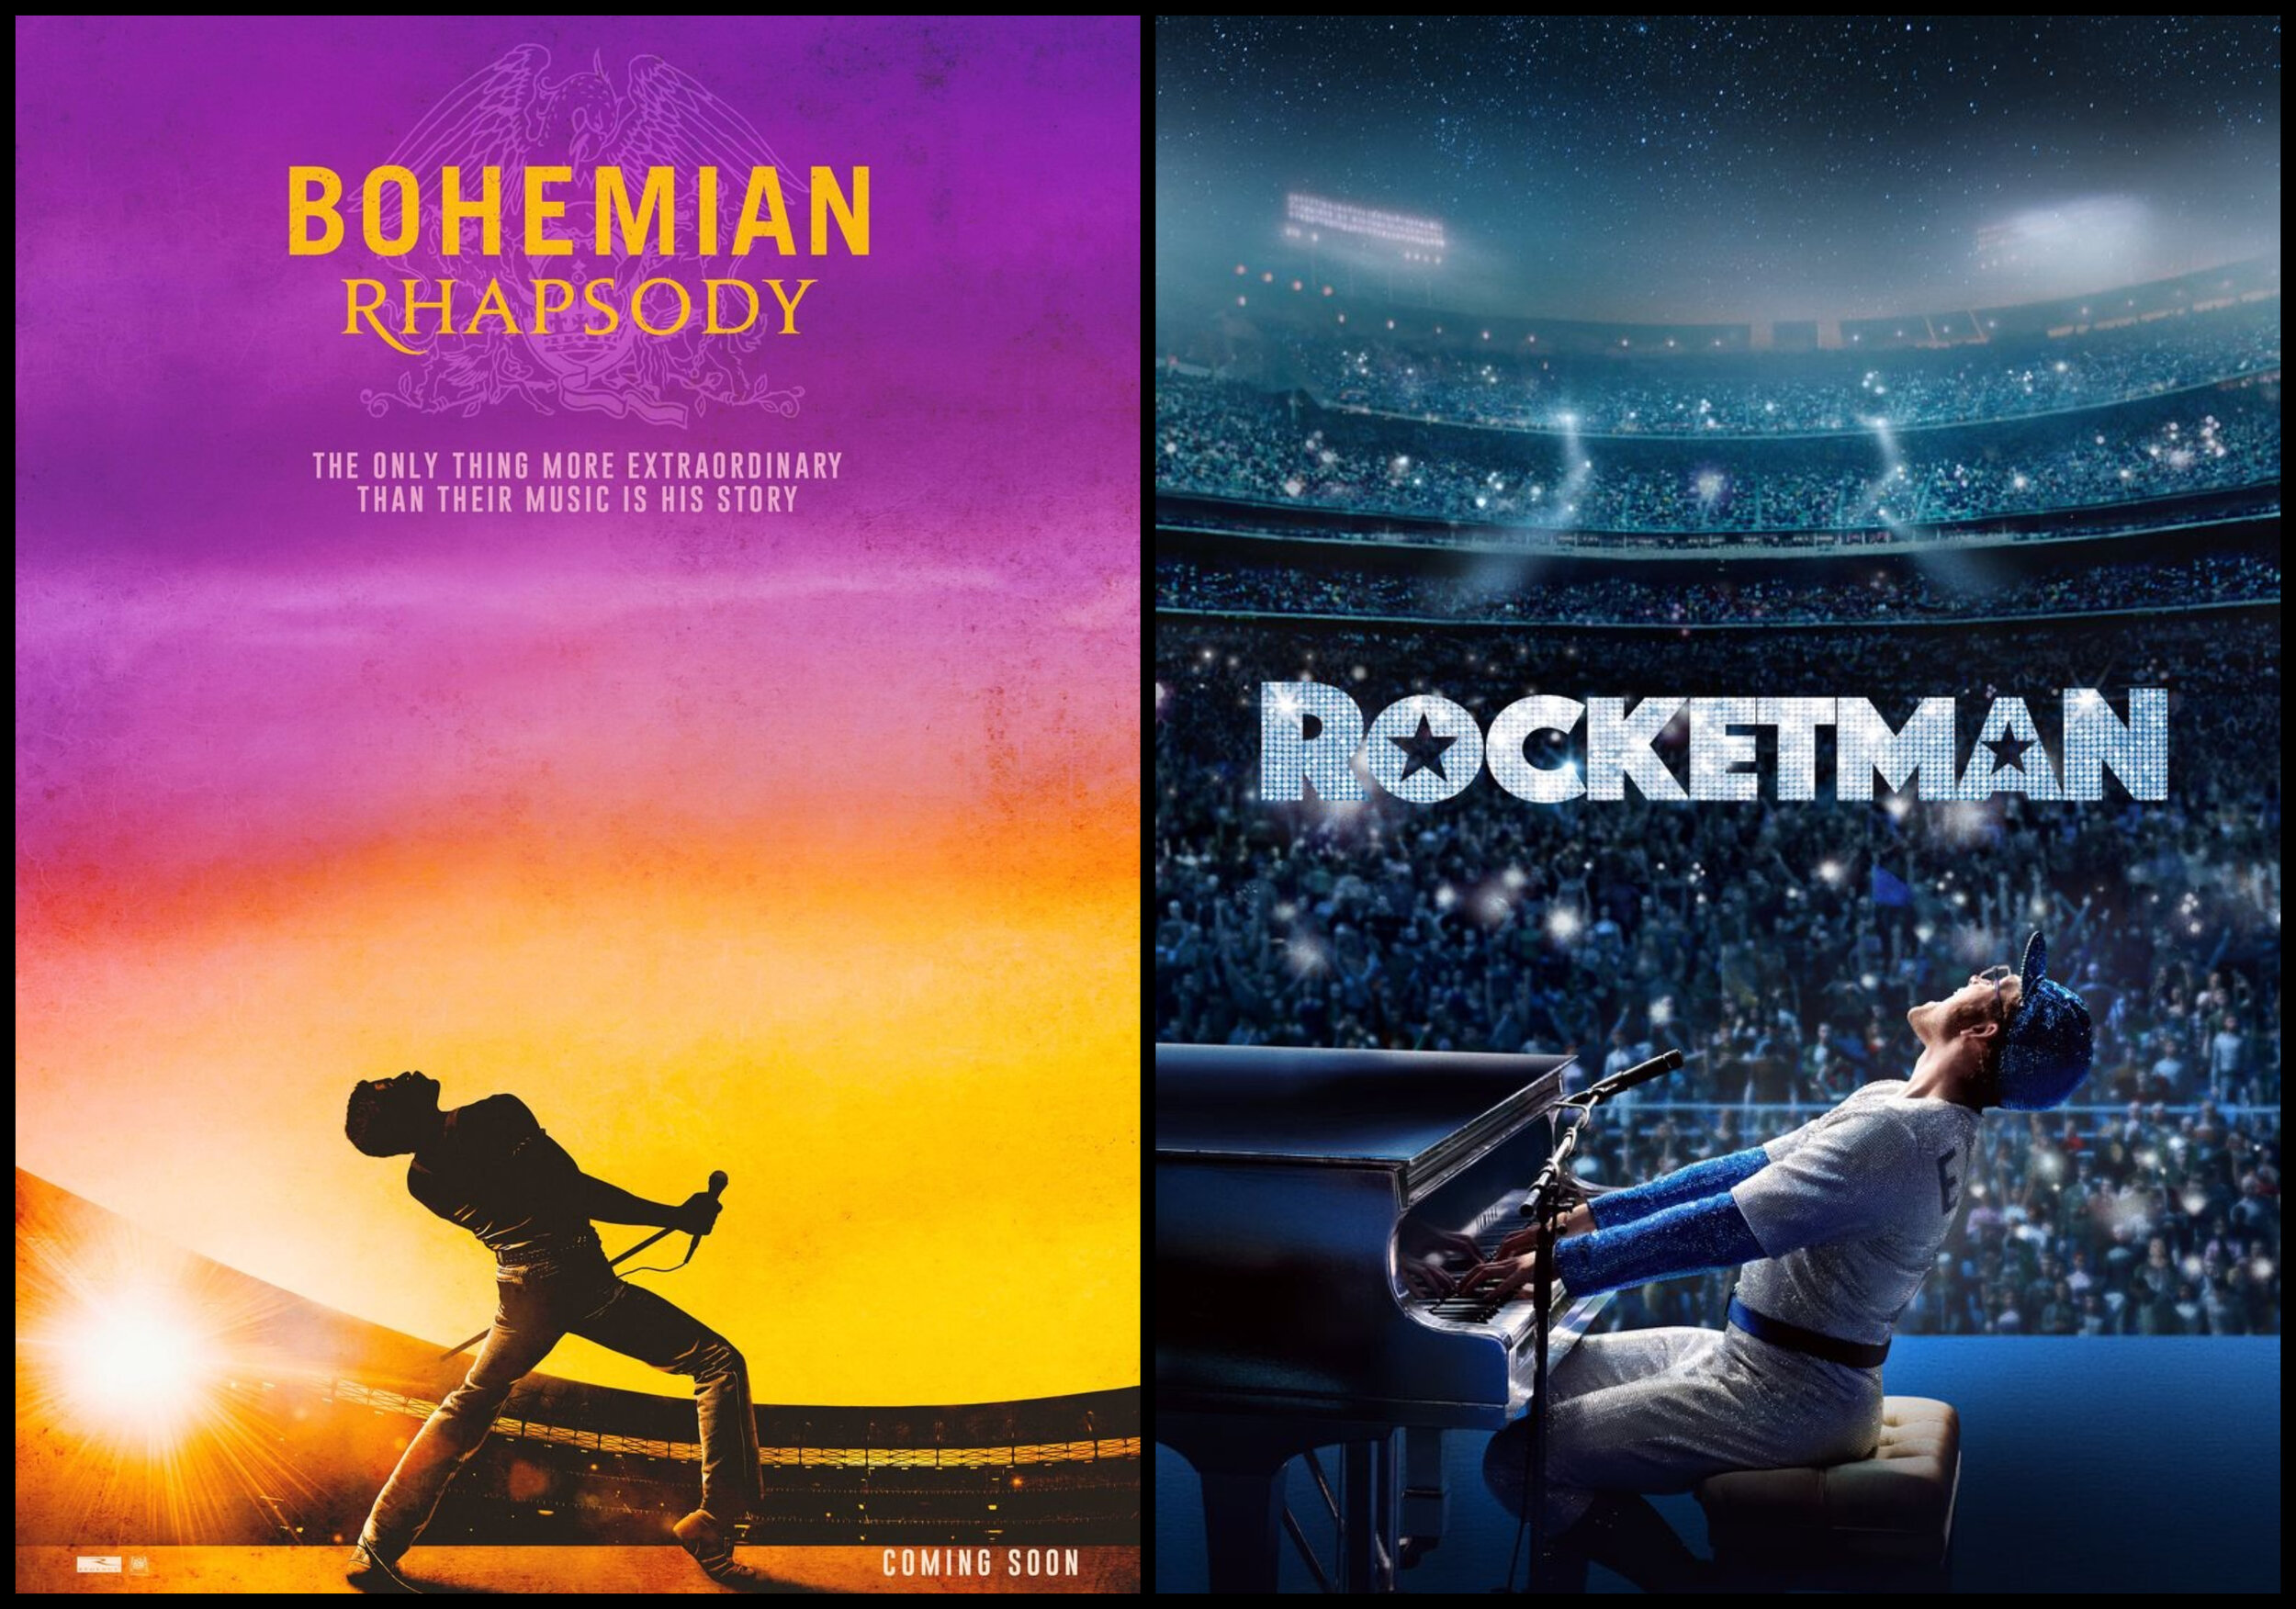 Bohemian Rhapsody 2018 Movie Fan Poster Wallpapers